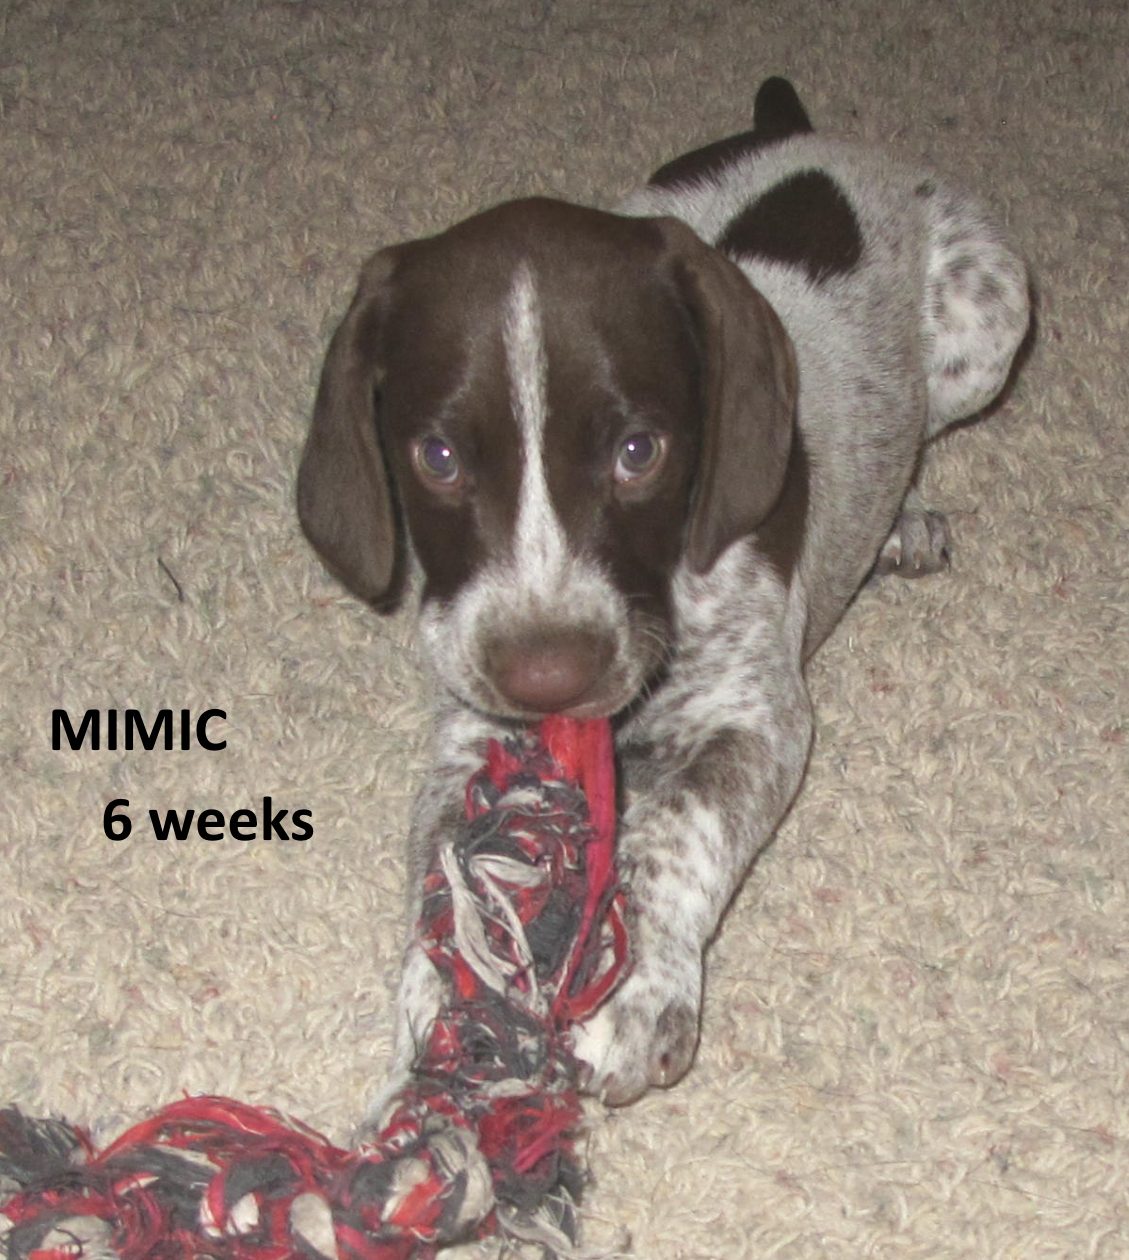 Mimic+Toy2-6weeks.jpg